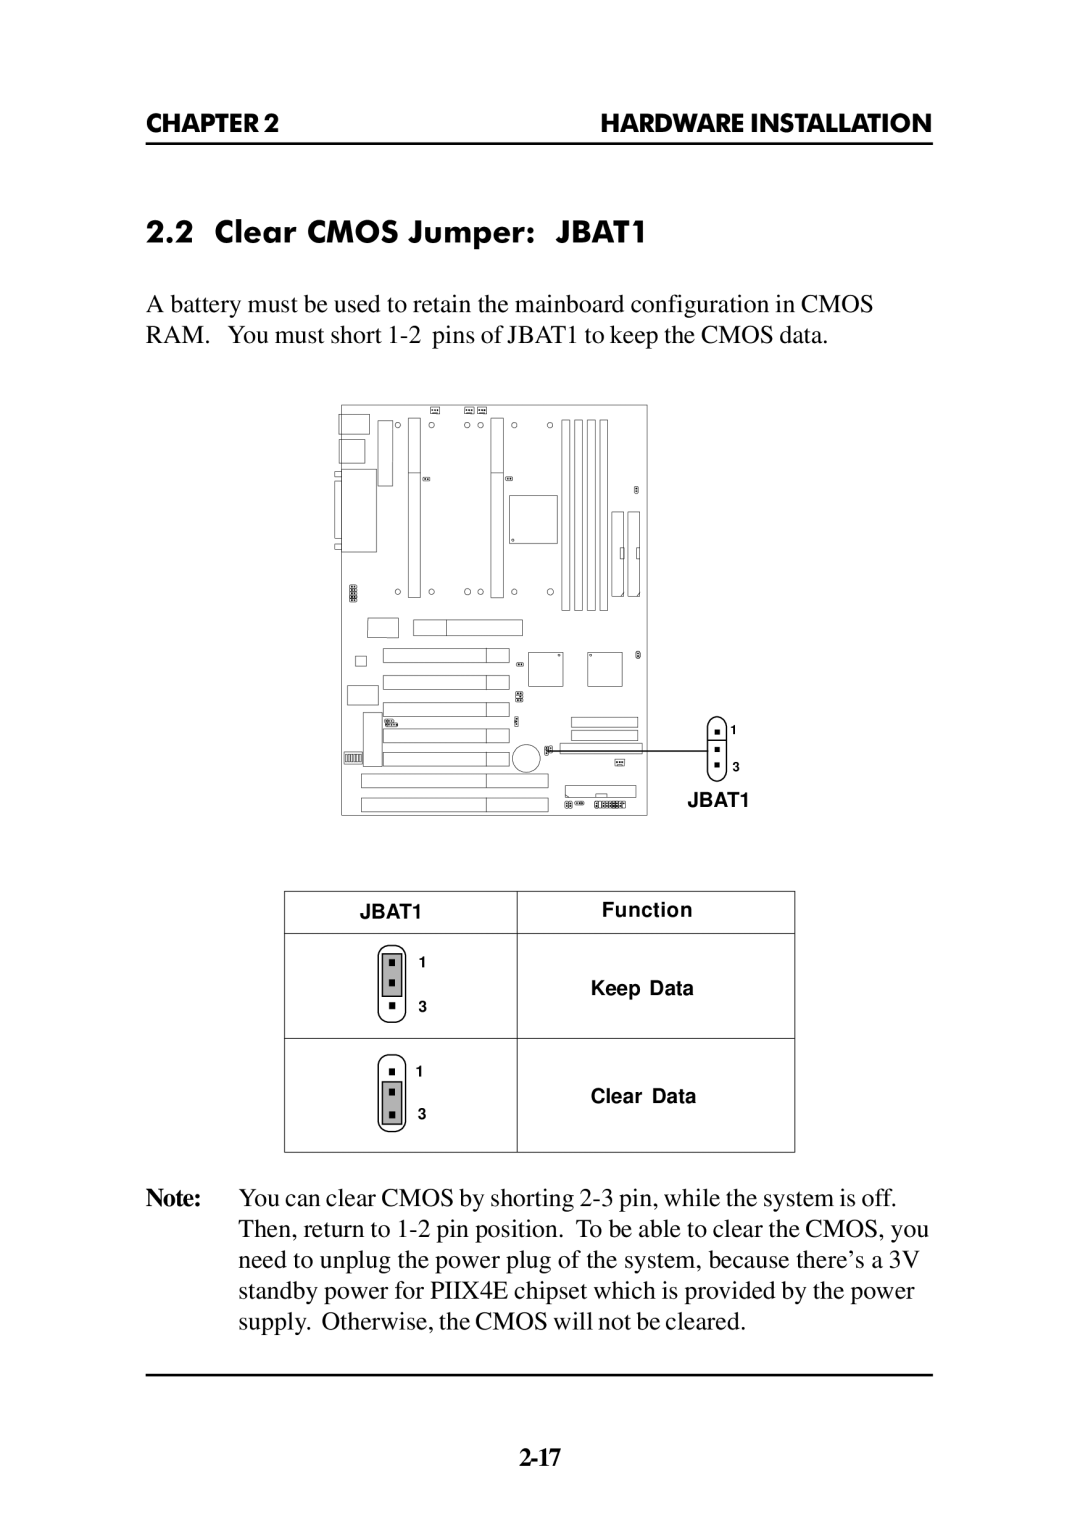 Intel ATX BX2 manual Clear Cmos Jumper JBAT1 